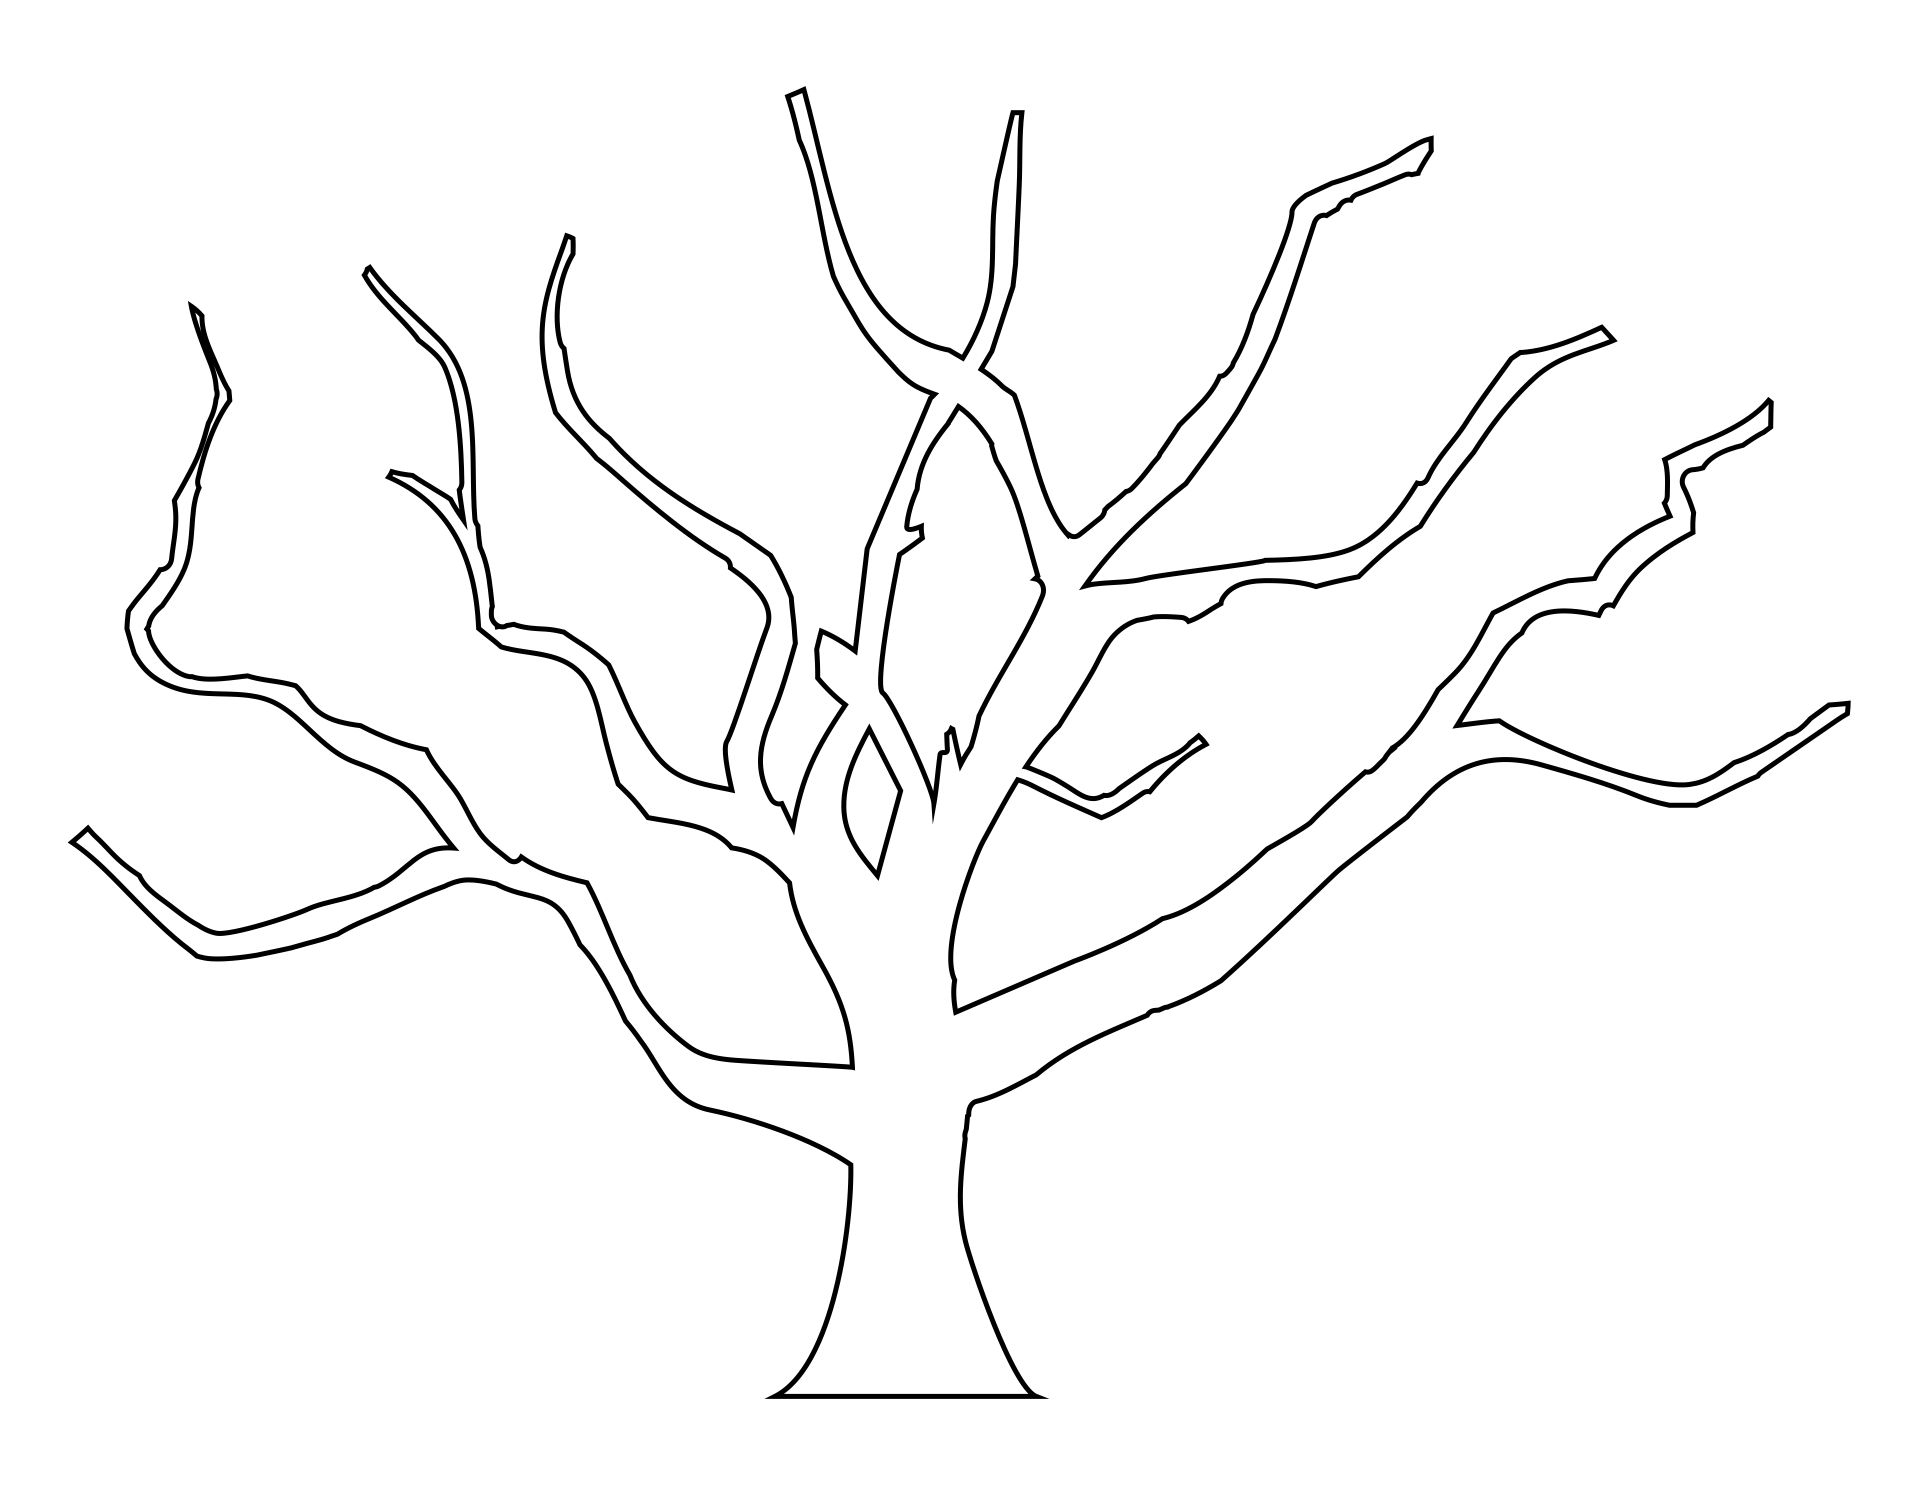 Дерево рисунок без листьев шаблон